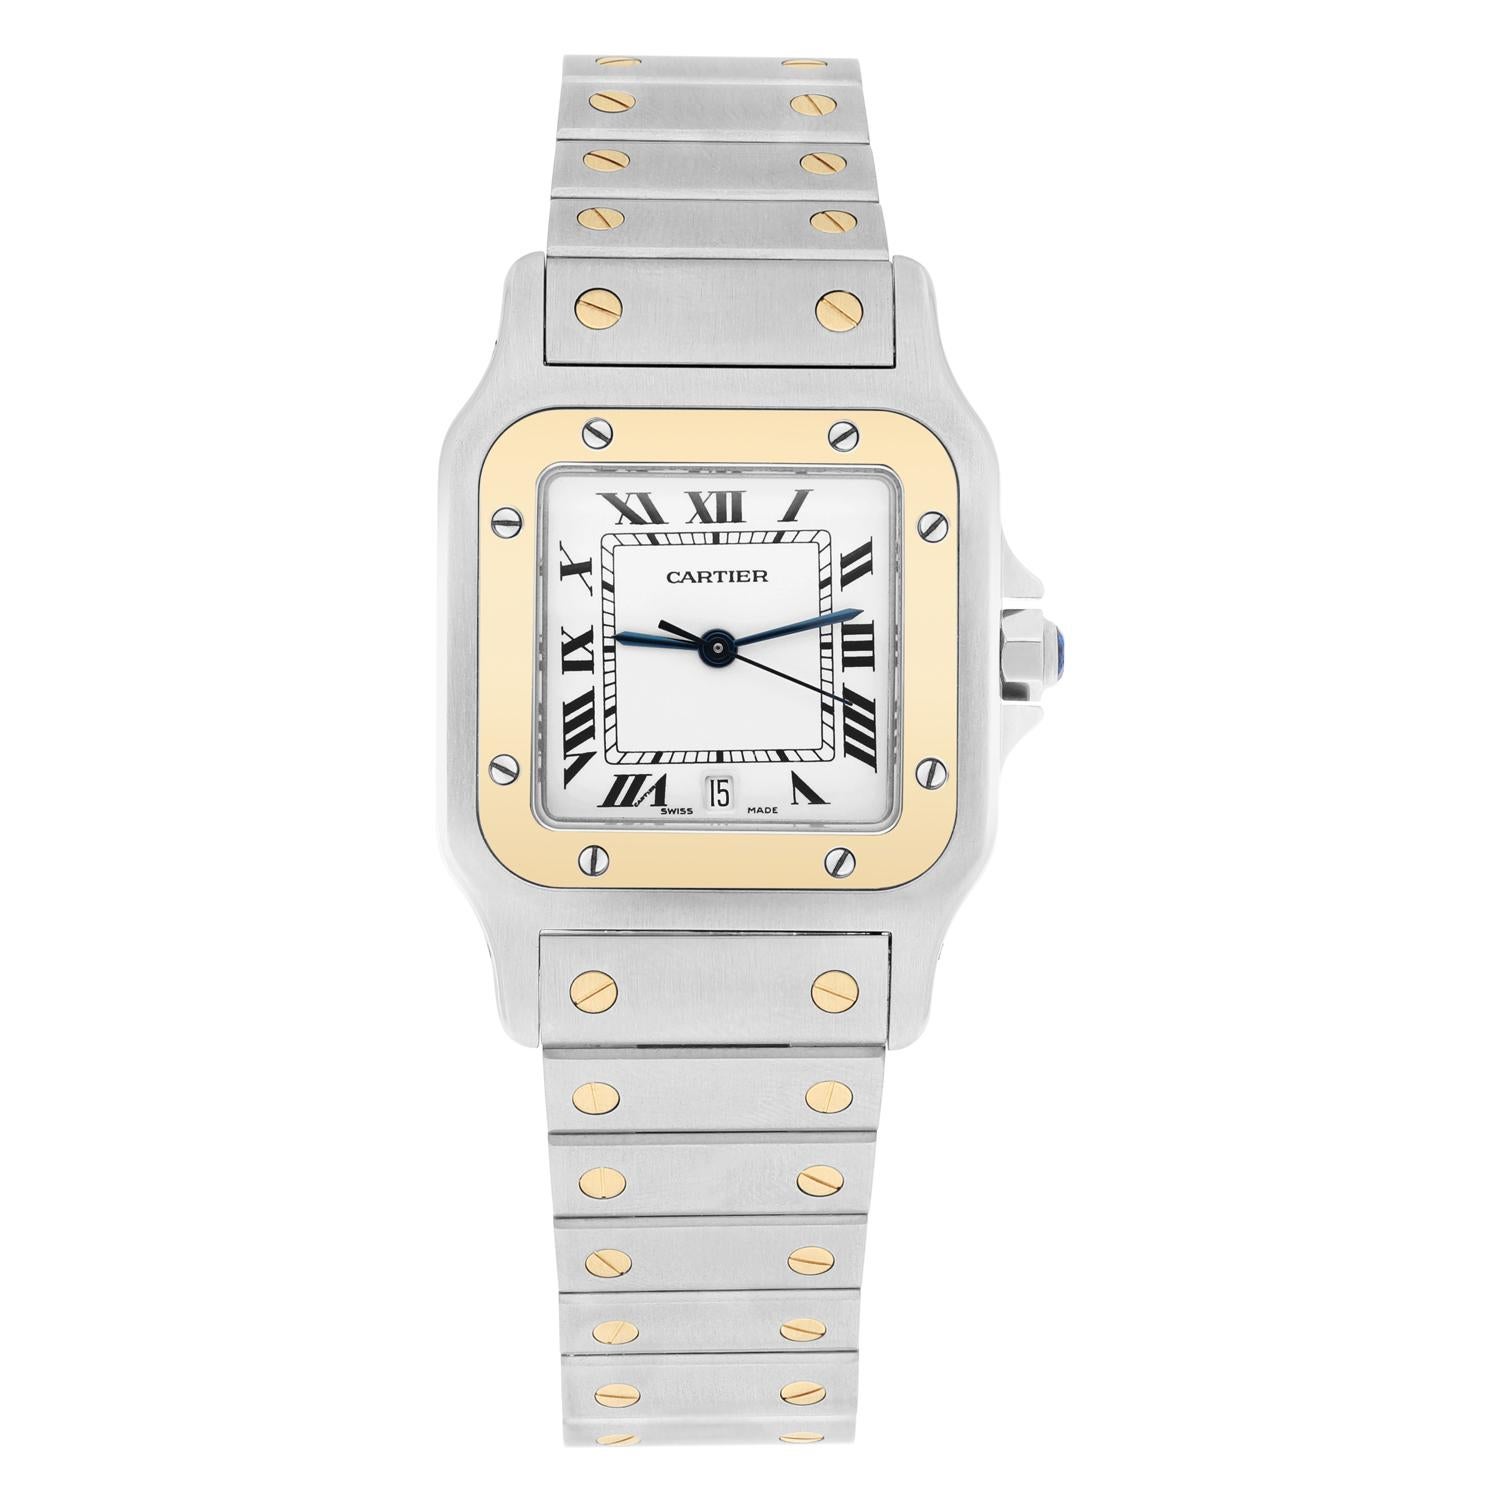 Élevez votre style avec cette superbe montre-bracelet Cartier Santos Galbee. Fabriqué en acier inoxydable de haute qualité et en or jaune élégant, ce garde-temps de luxe est doté d'une lunette fixe d'une couleur jaune audacieuse, avec des index en